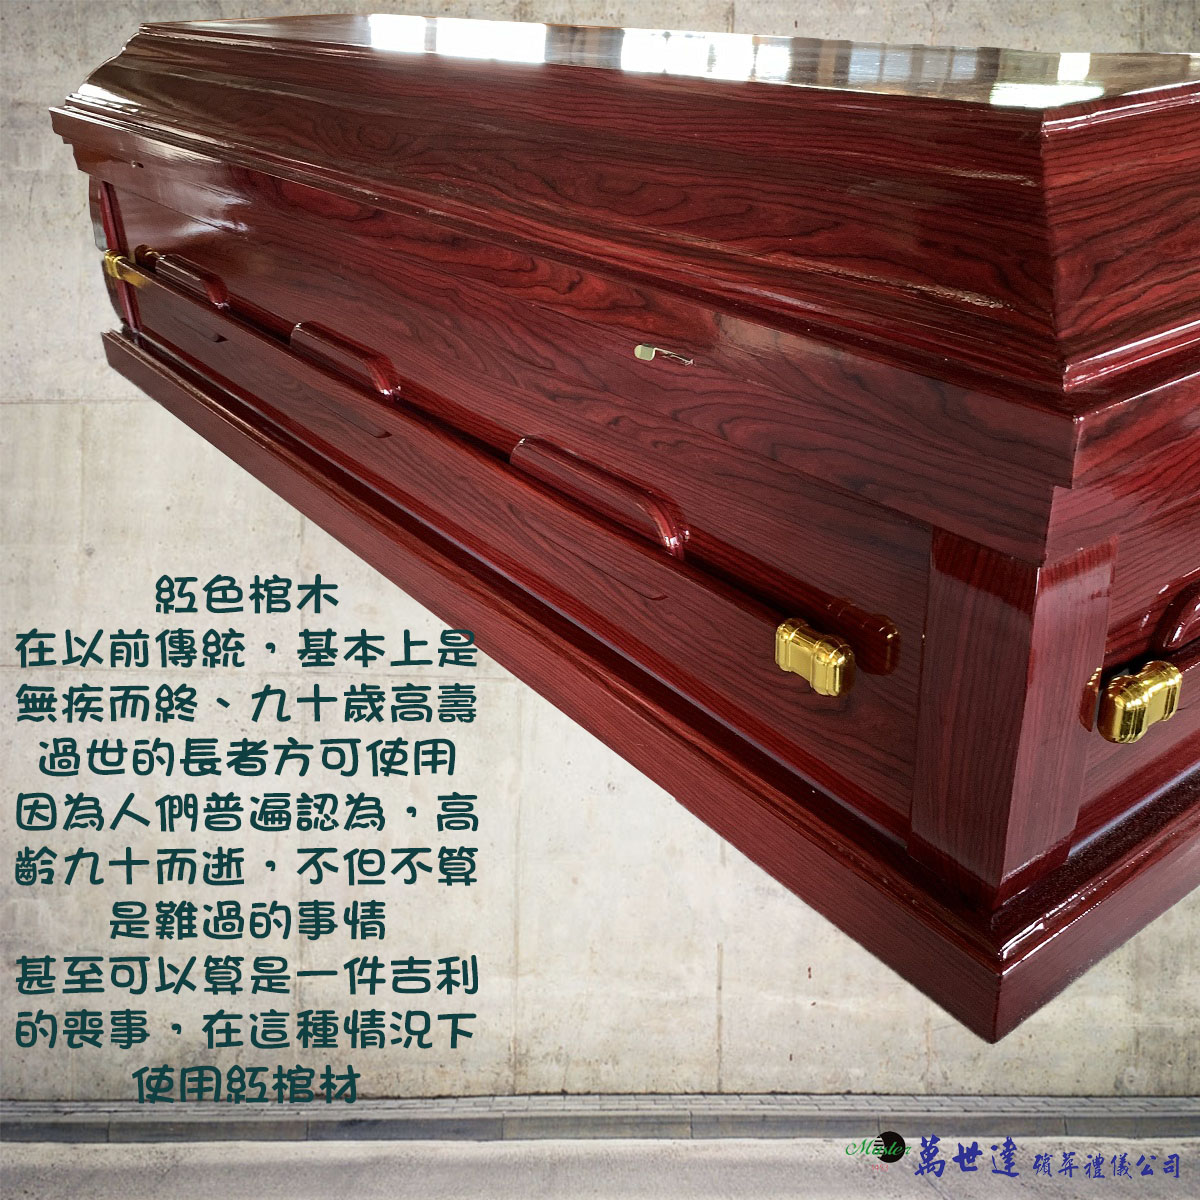 【入殮出】十字架基督天主火化平蓋紅木扶手棺2.1尺